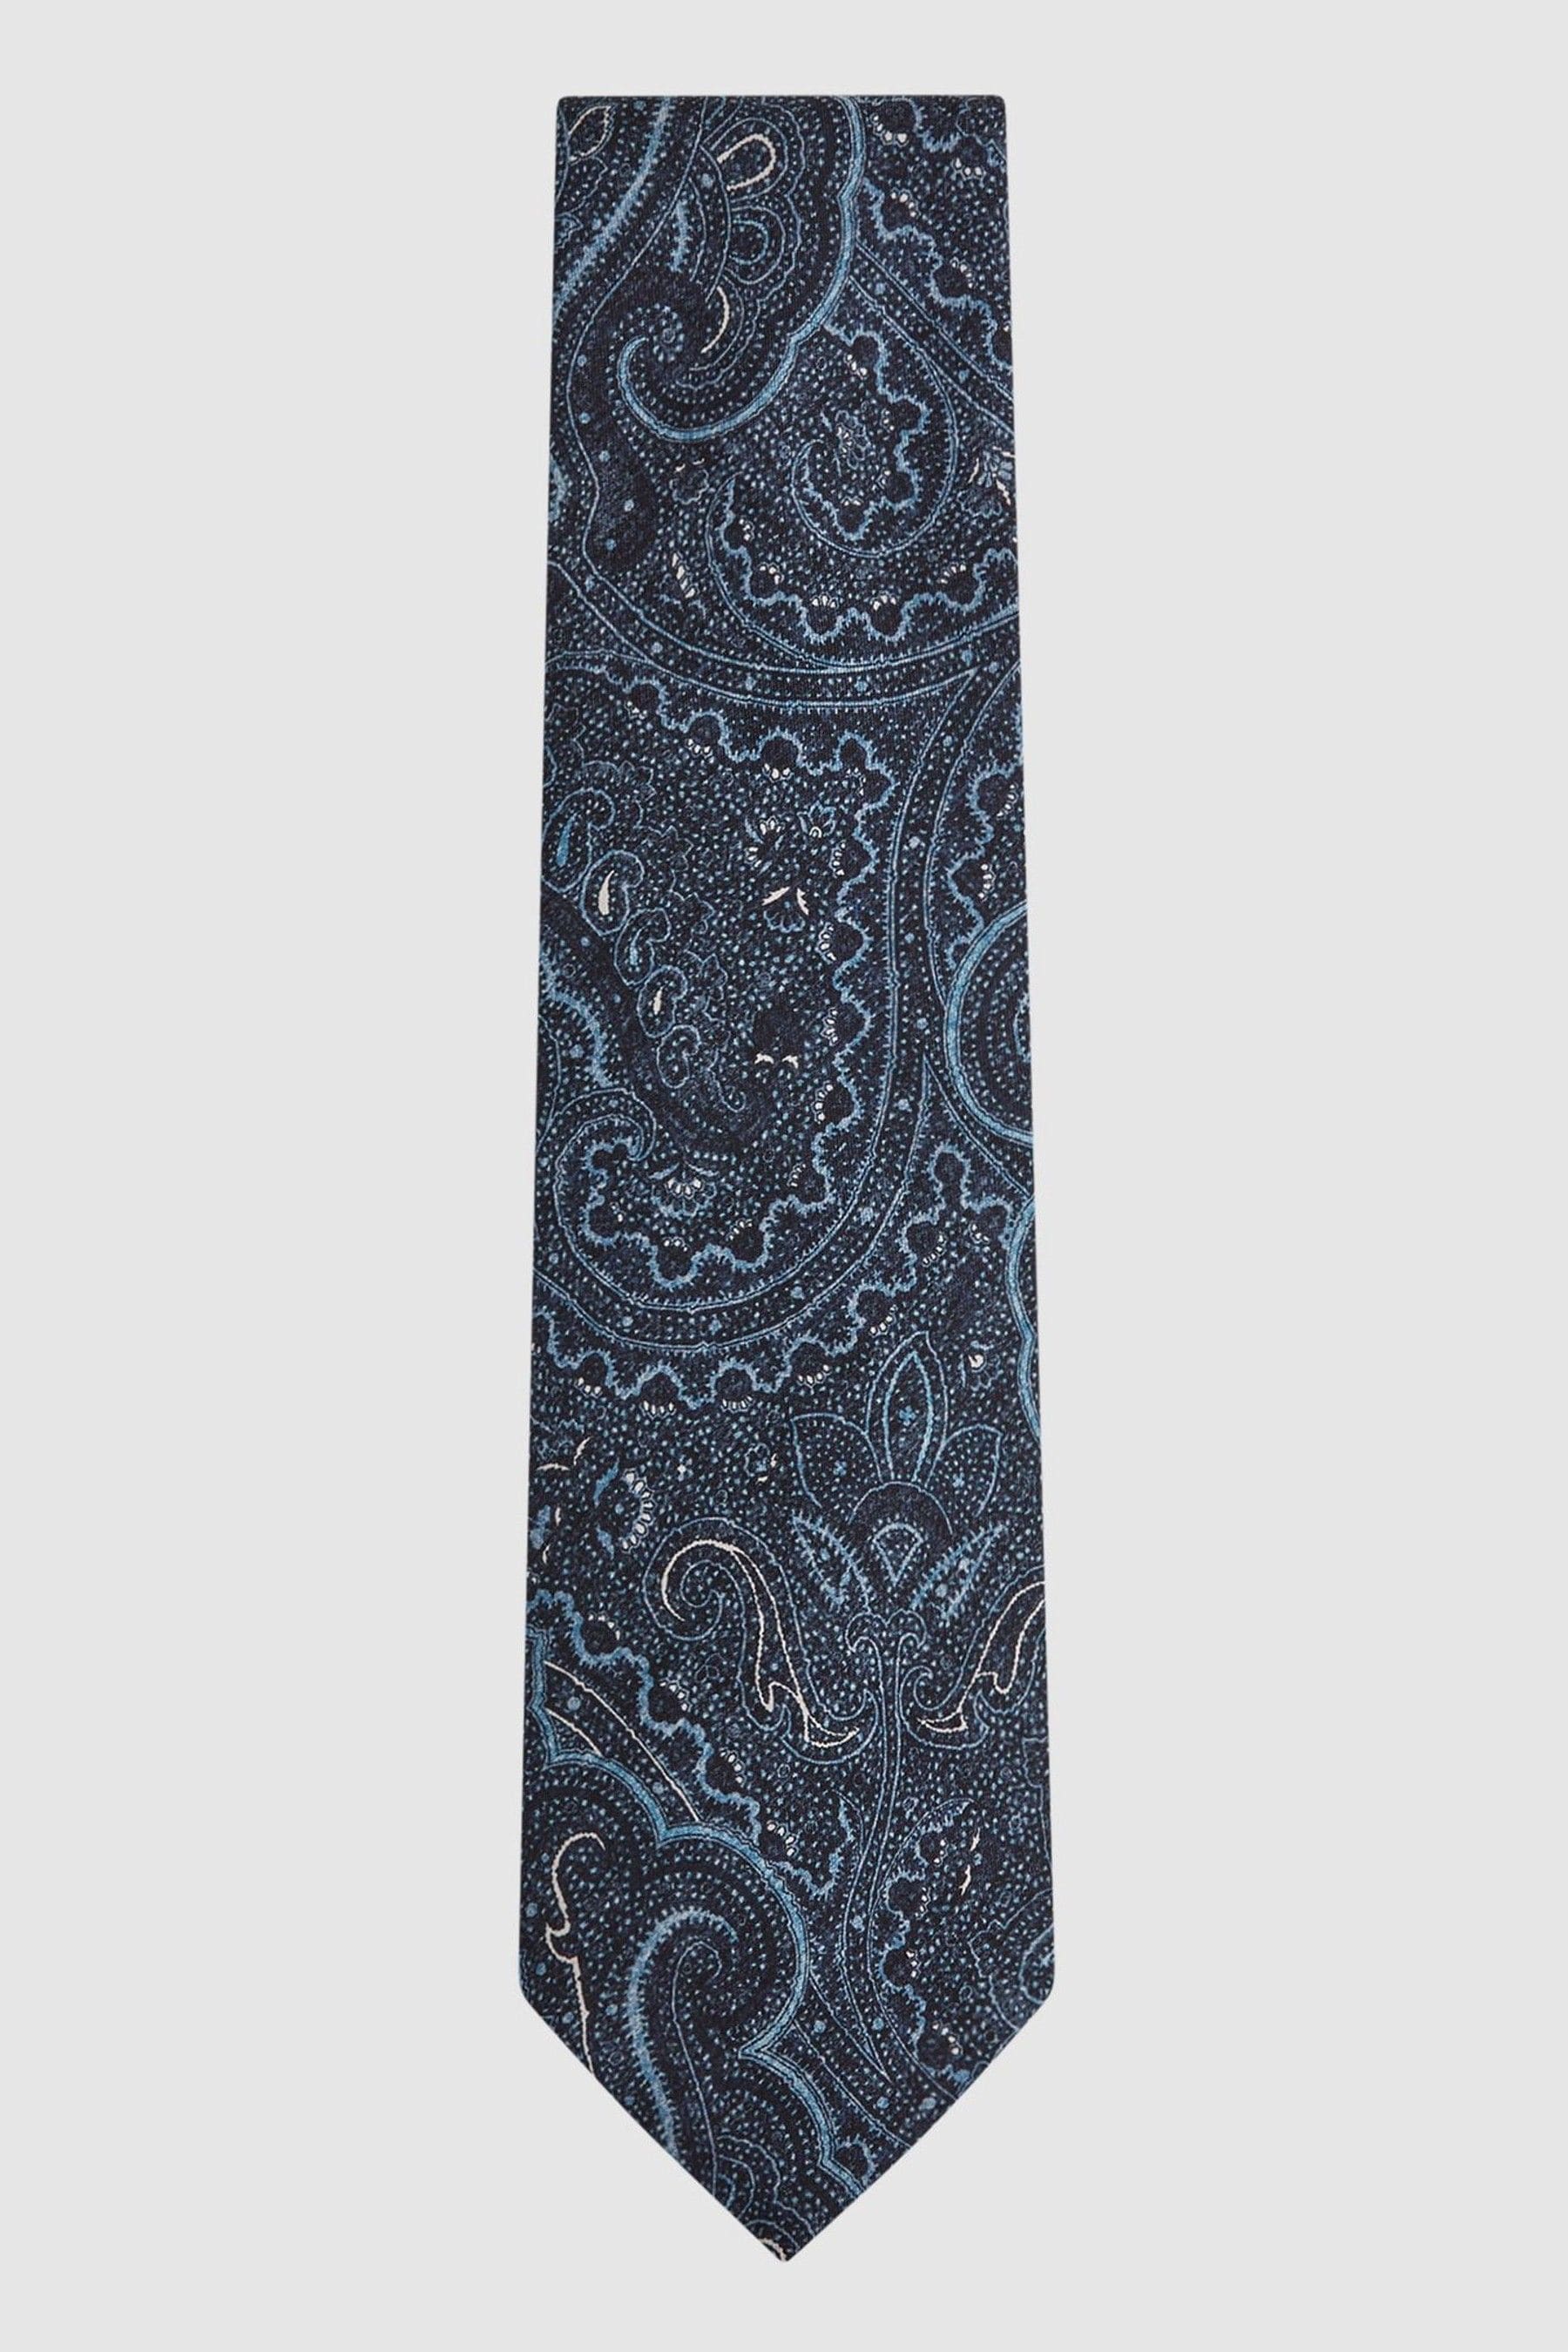 Reiss Lipari - Indigo Silk Paisley Tie,